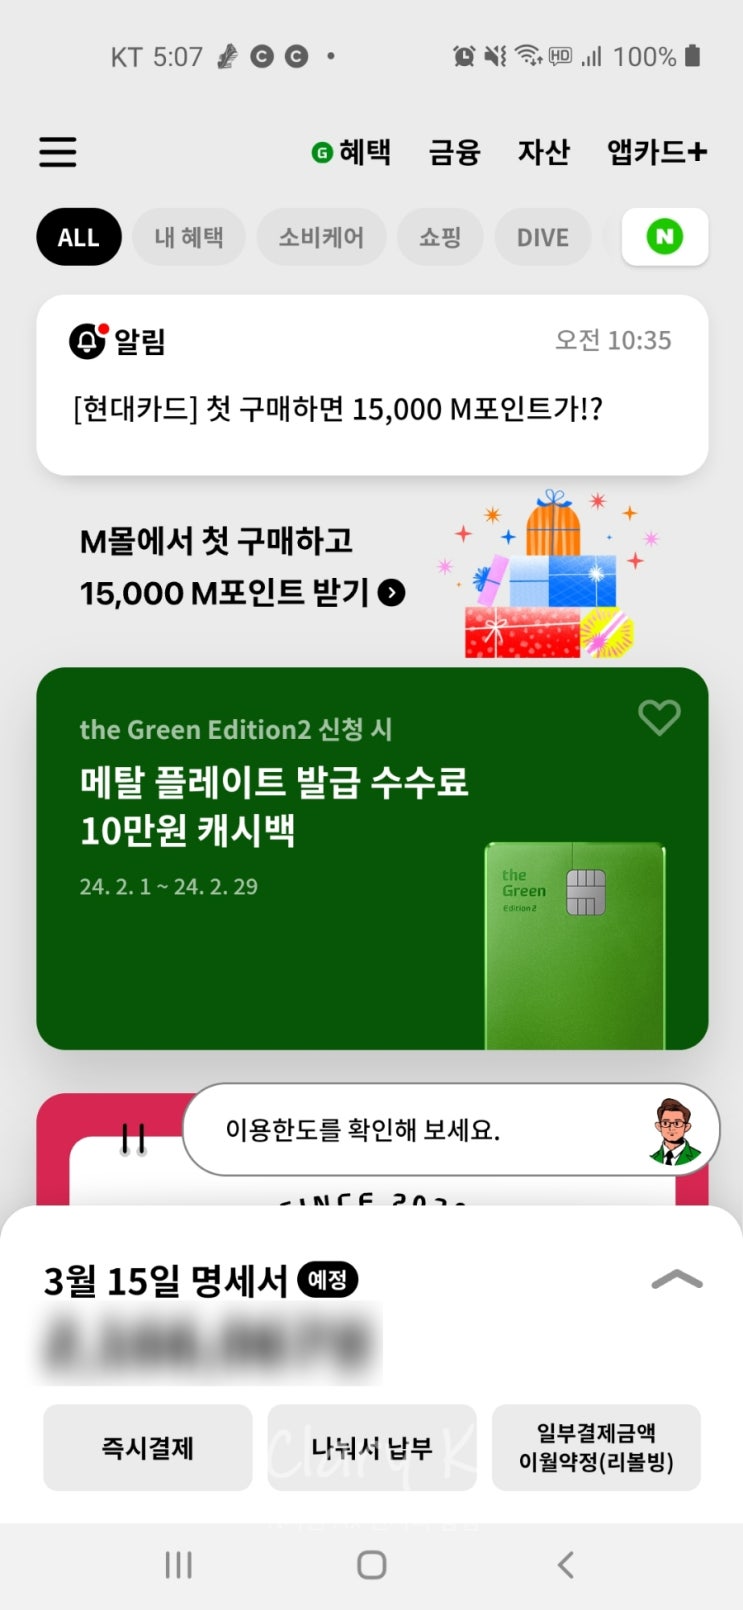 [포인트] 현대카드 M몰 첫 구매 혜택으로 15000포인트 받기 29일까지